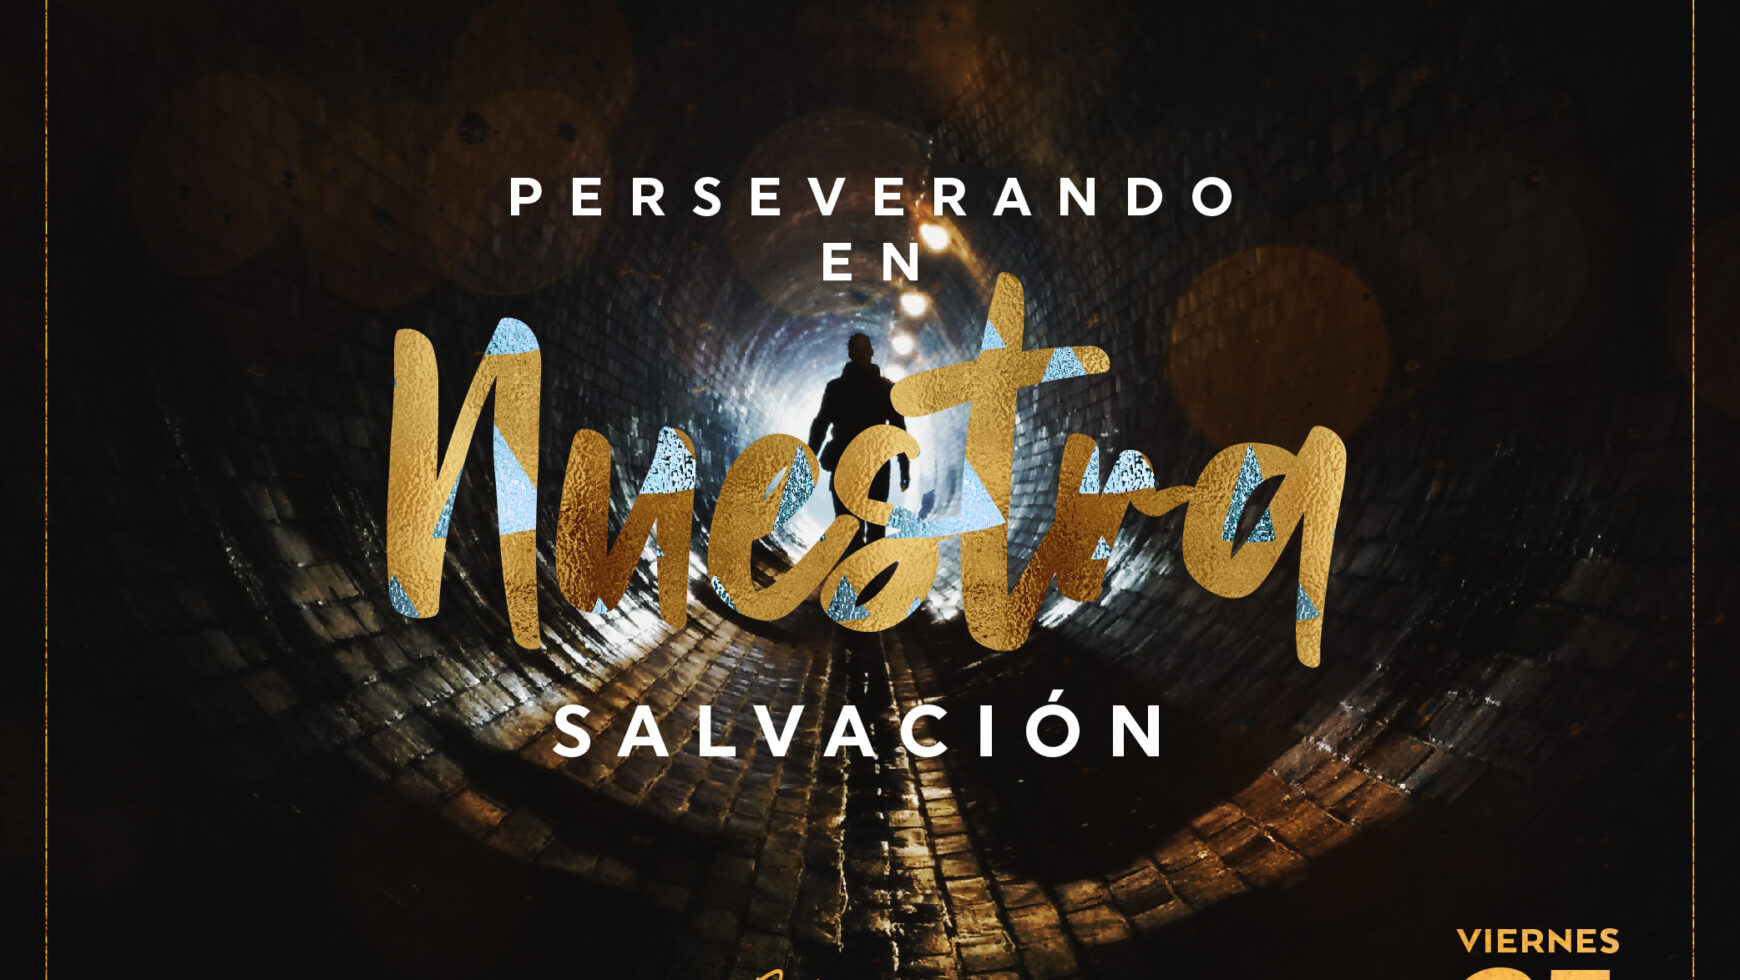 Perseverando en nuestra salvación